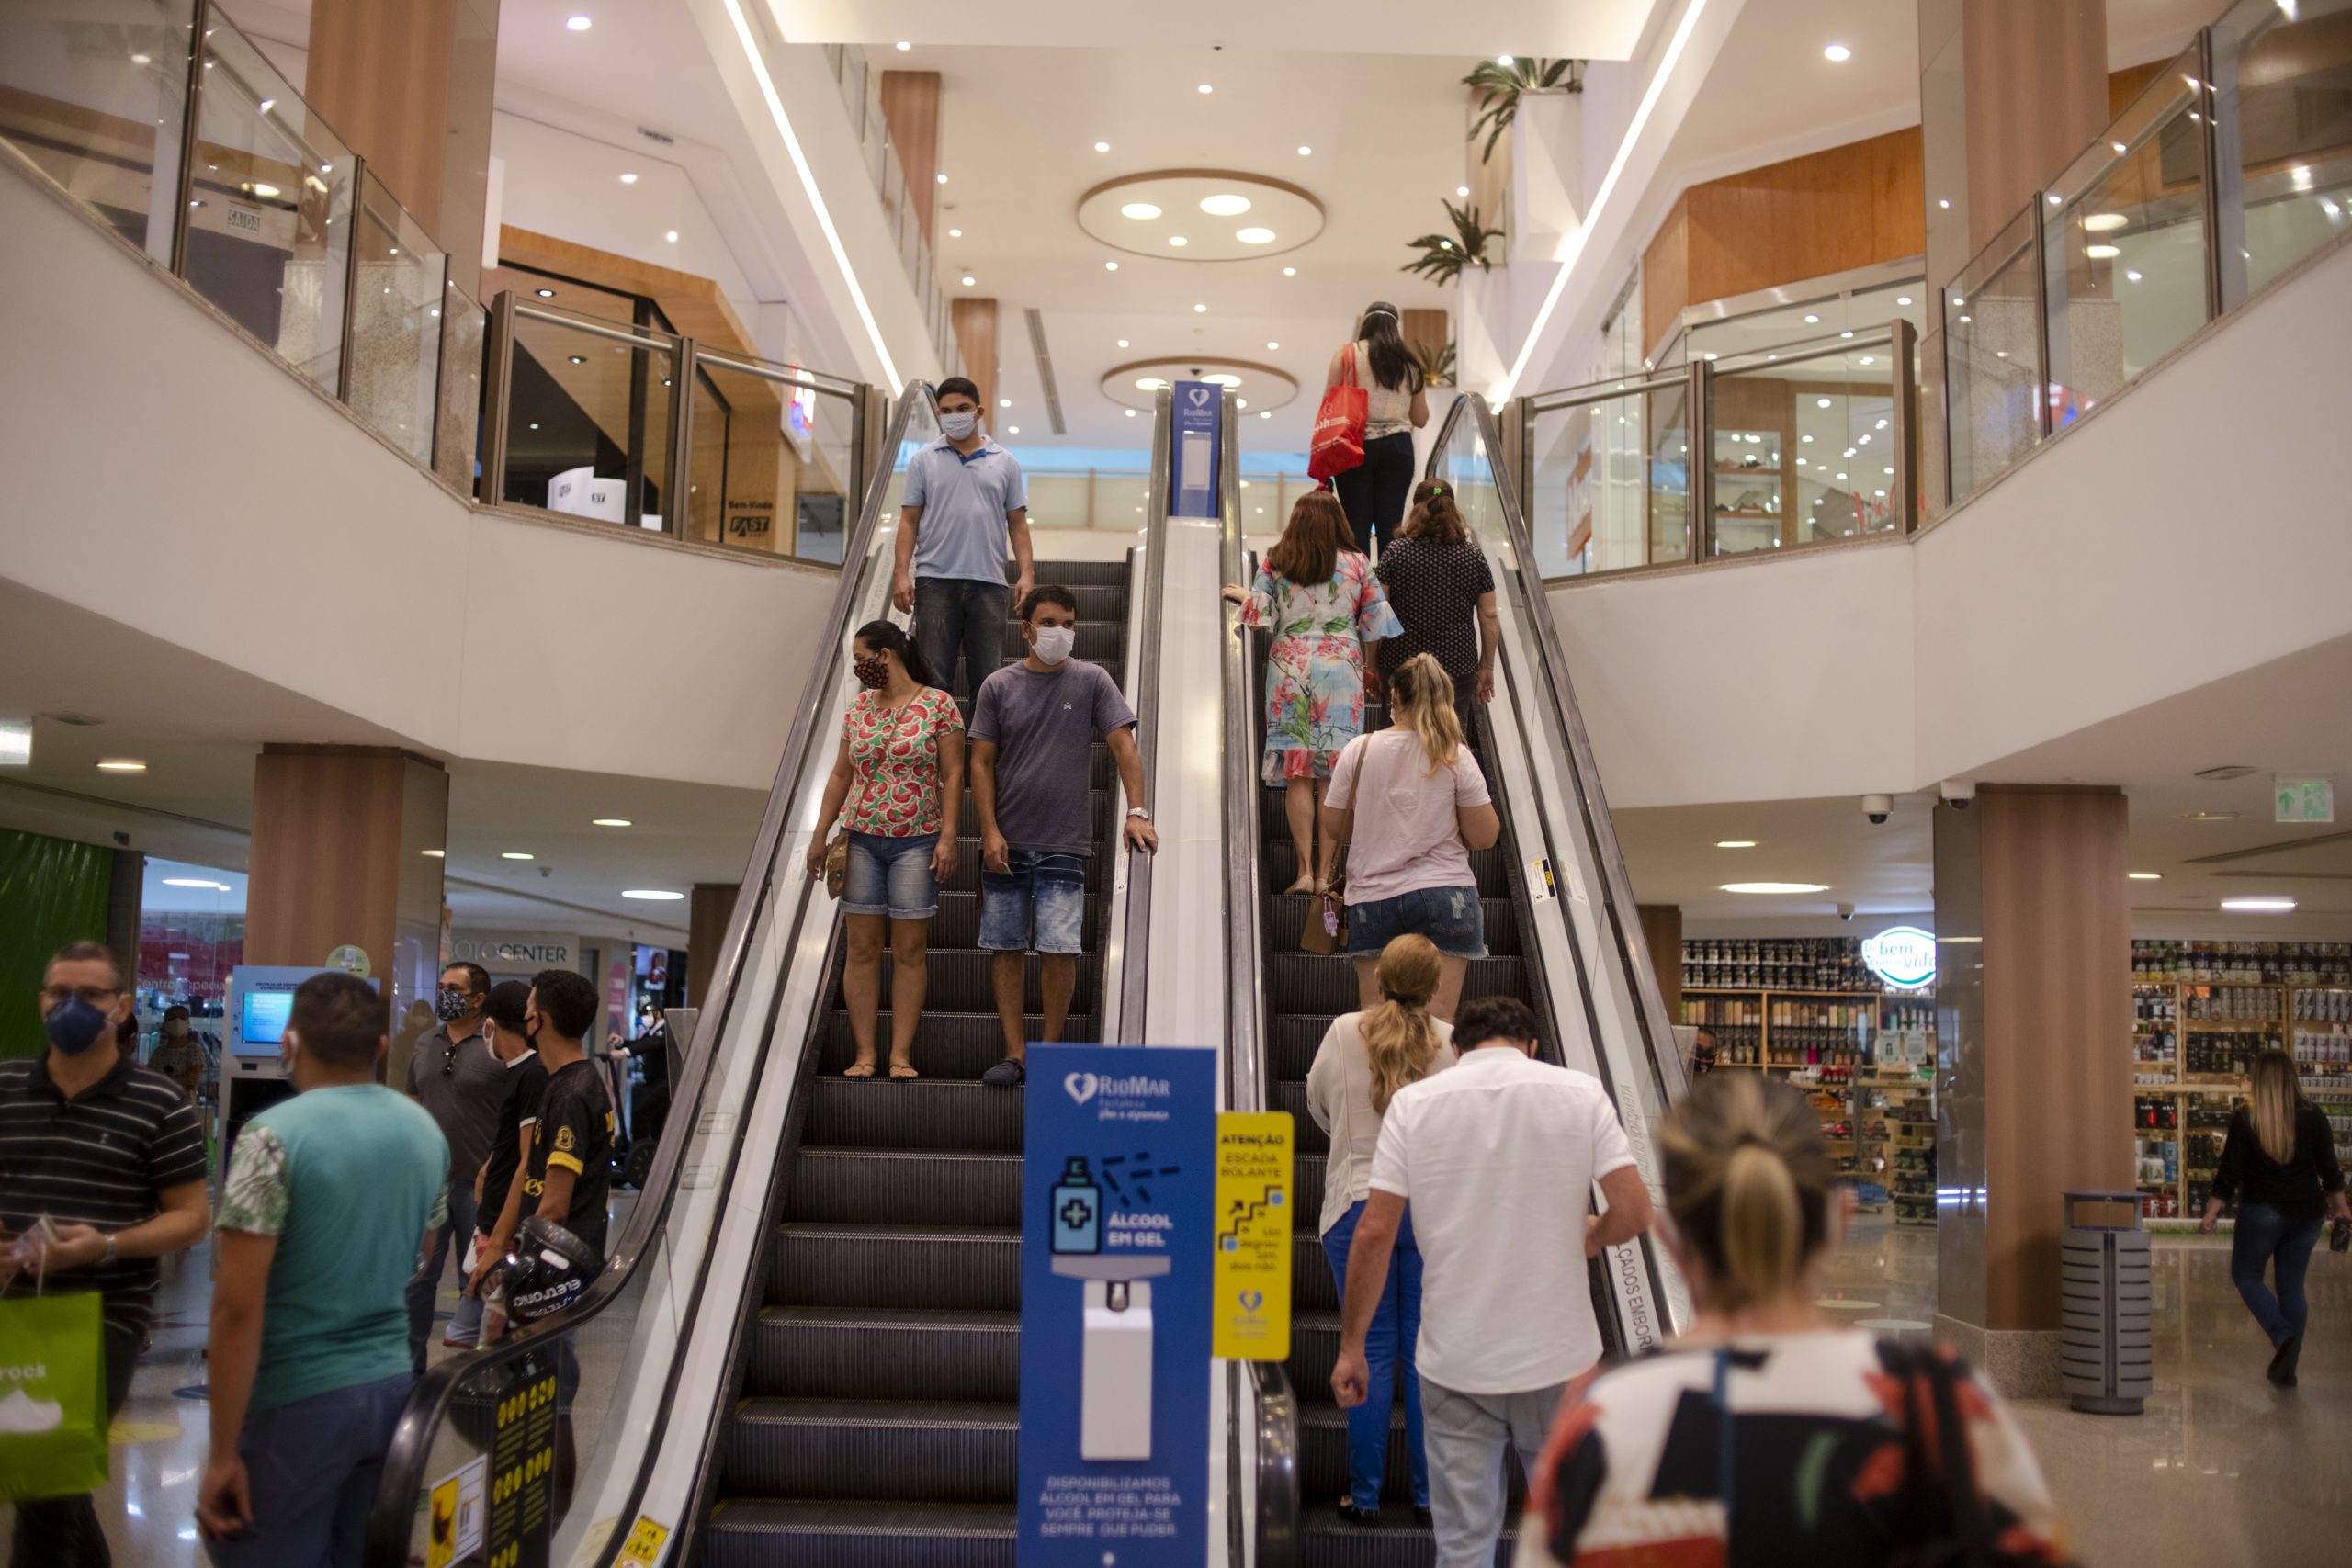 Carnaval: foto mostra duas escadas rolantes de um shopping, com várias pessoas subindo e descendo.